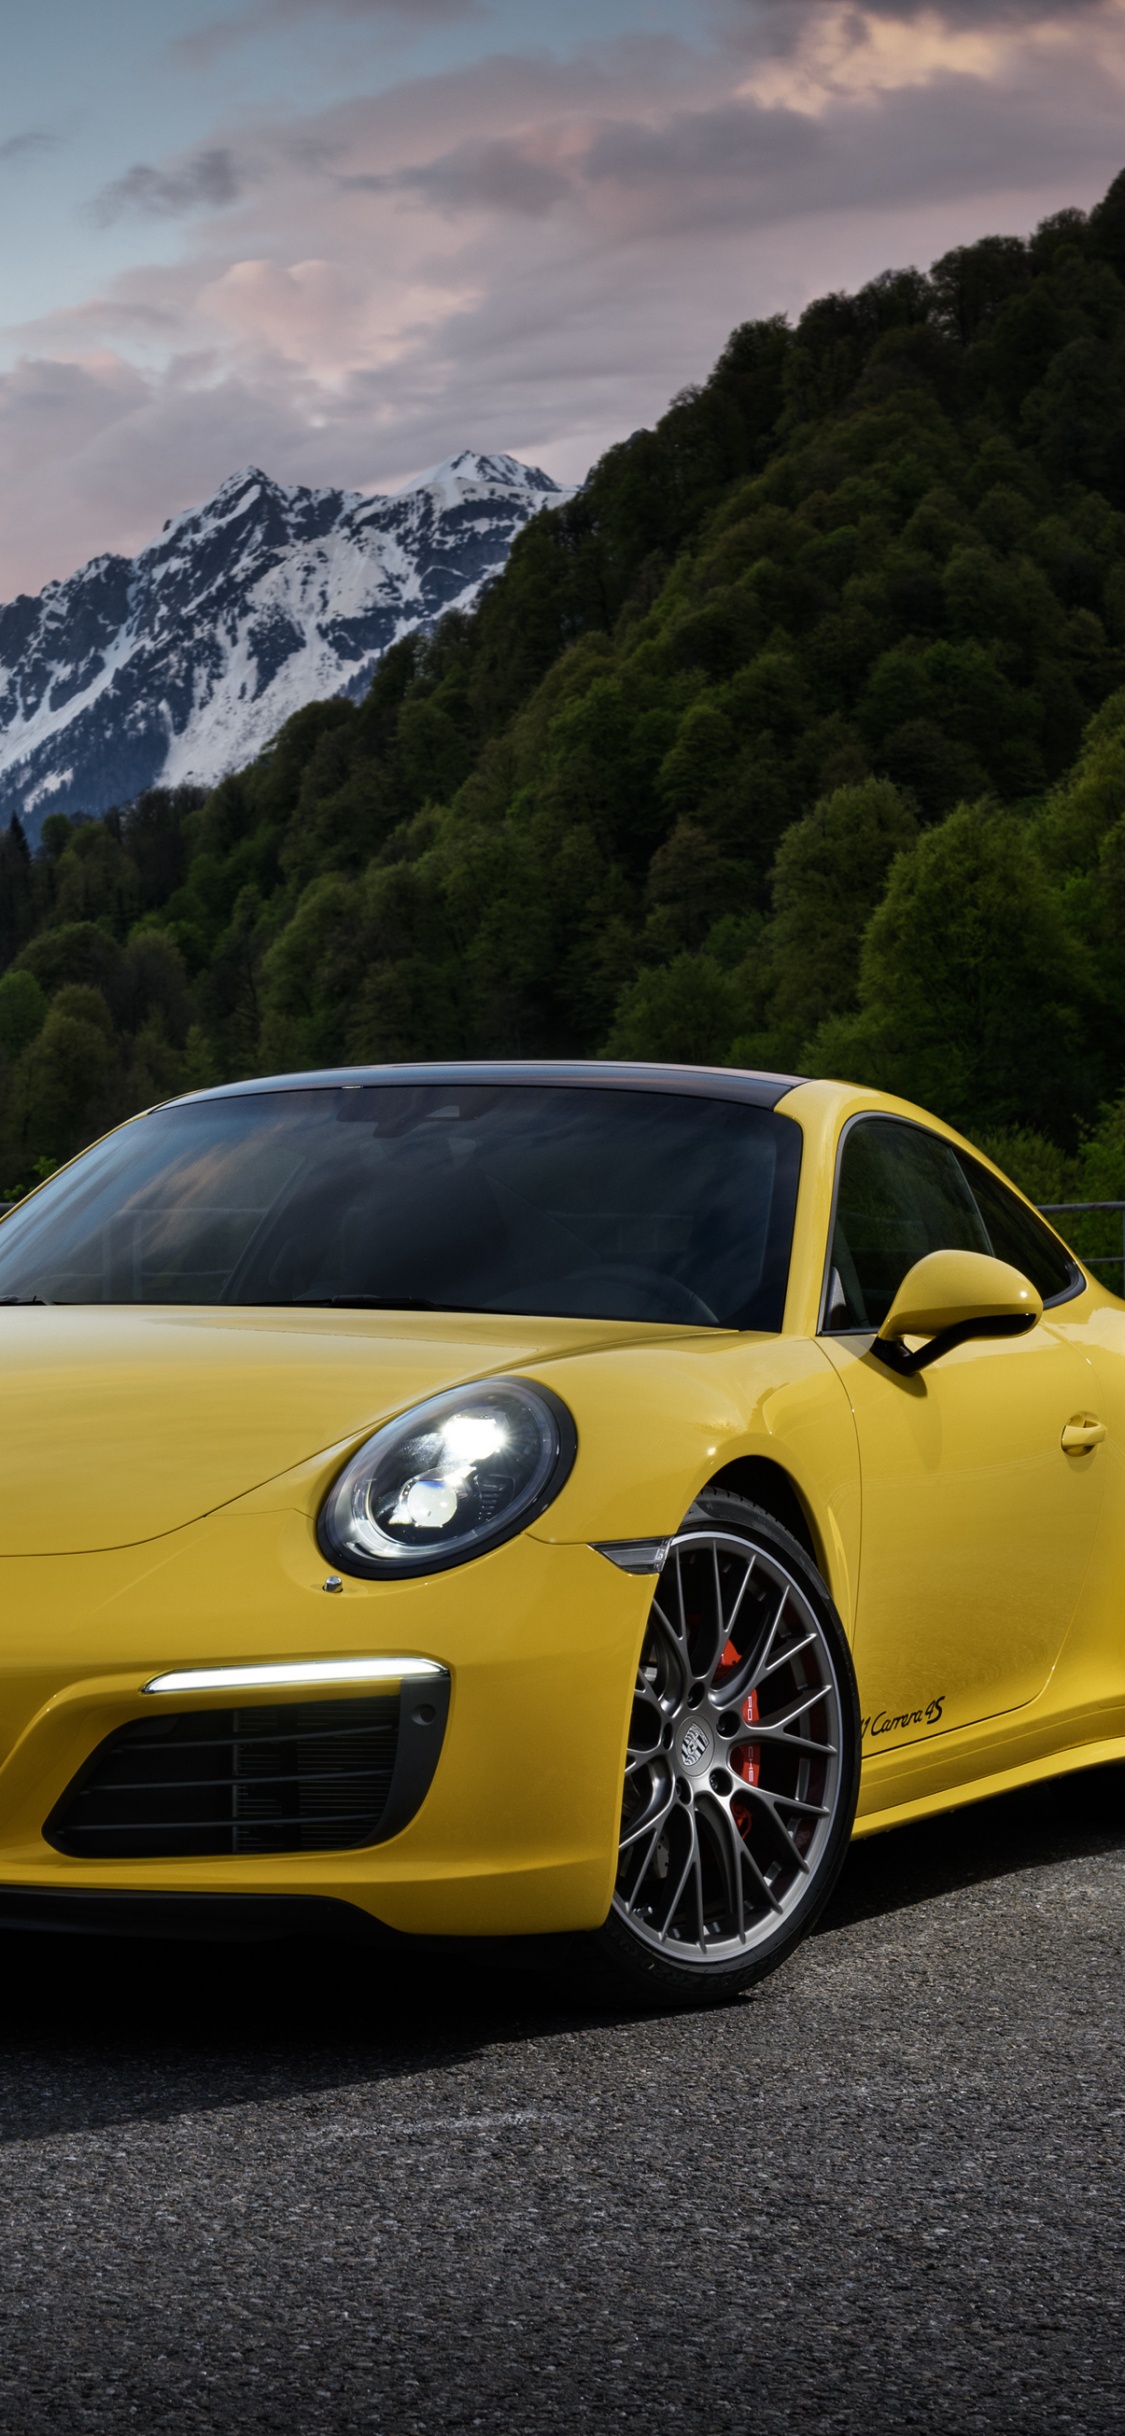 Porsche 911 Amarillo en la Carretera Cerca de la Montaña Durante el Día. Wallpaper in 1125x2436 Resolution